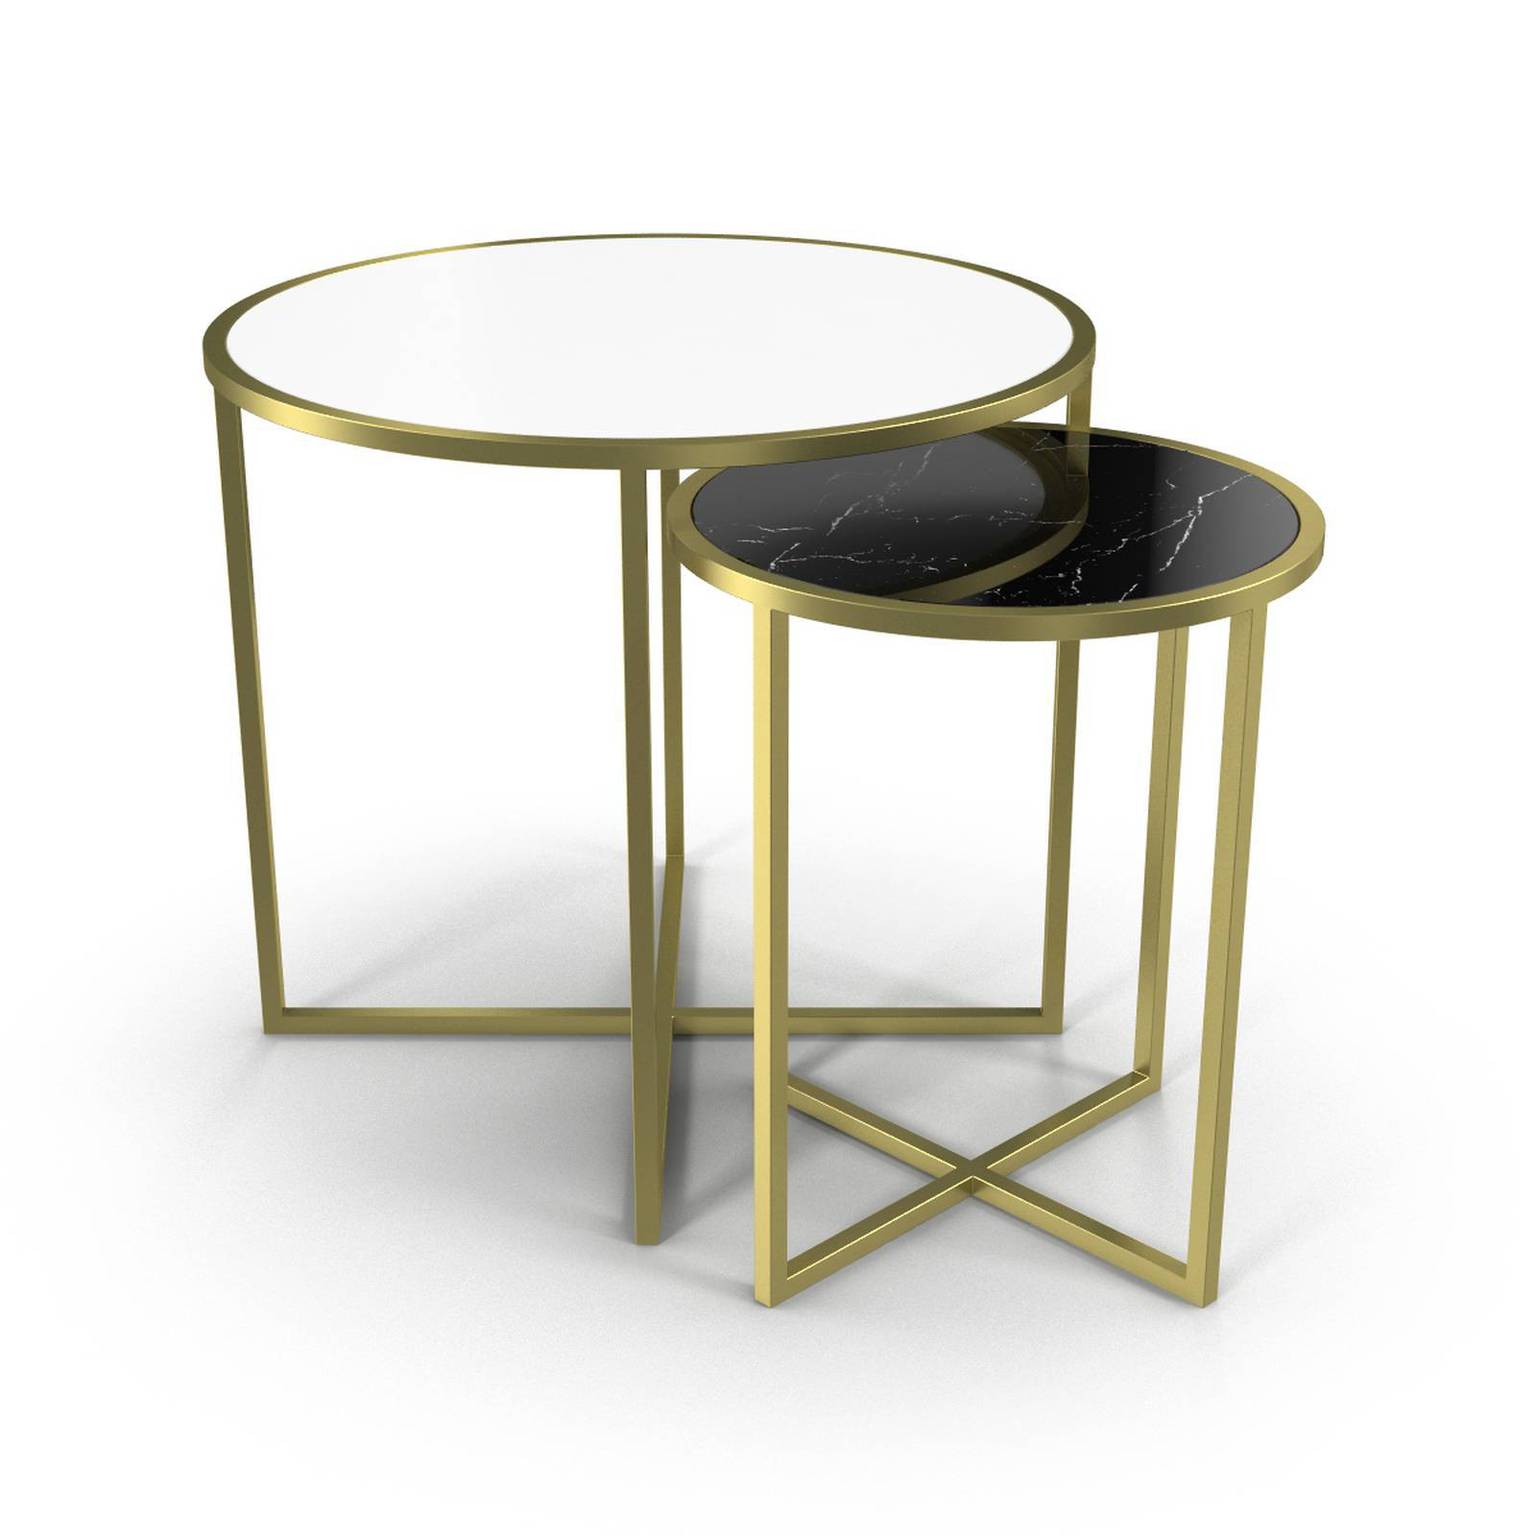 Пара столиков. Кофейный столик idform ct058-1 ROOMSEE. Столик латунь. Стол из латуни. Стол с латунными ножками.